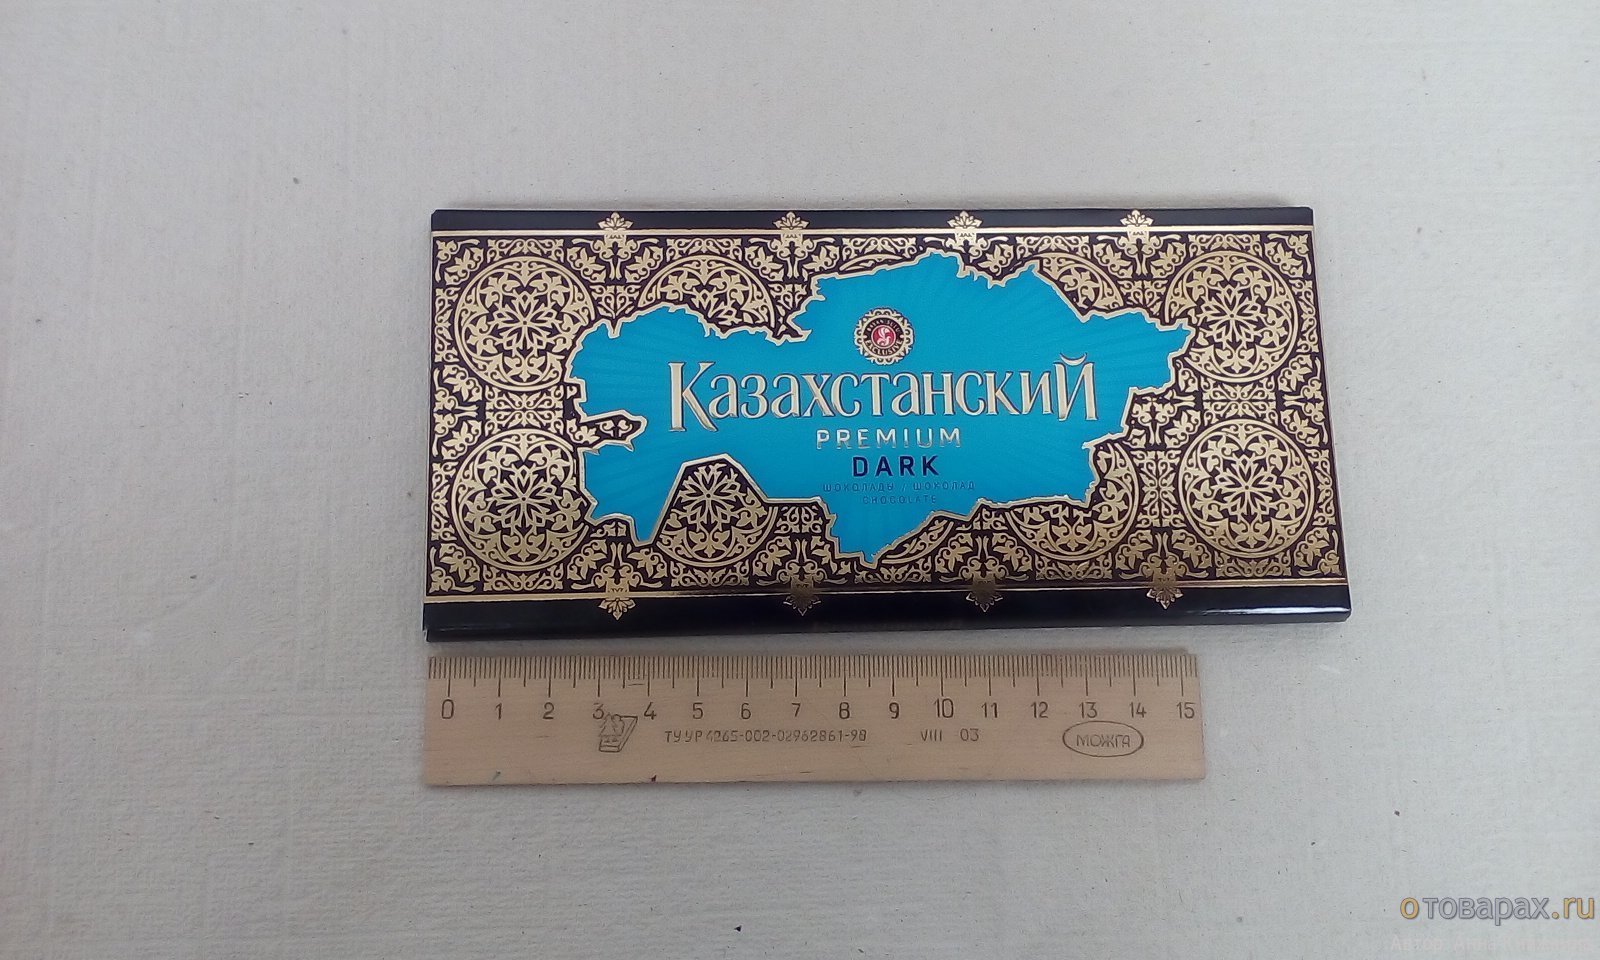 Какой размер у шоколадки. Шоколад Казахстан размер. Этикетки казахстанского шоколада. Казахская шоколадка. Размер шоколада Казахстан 100гр.